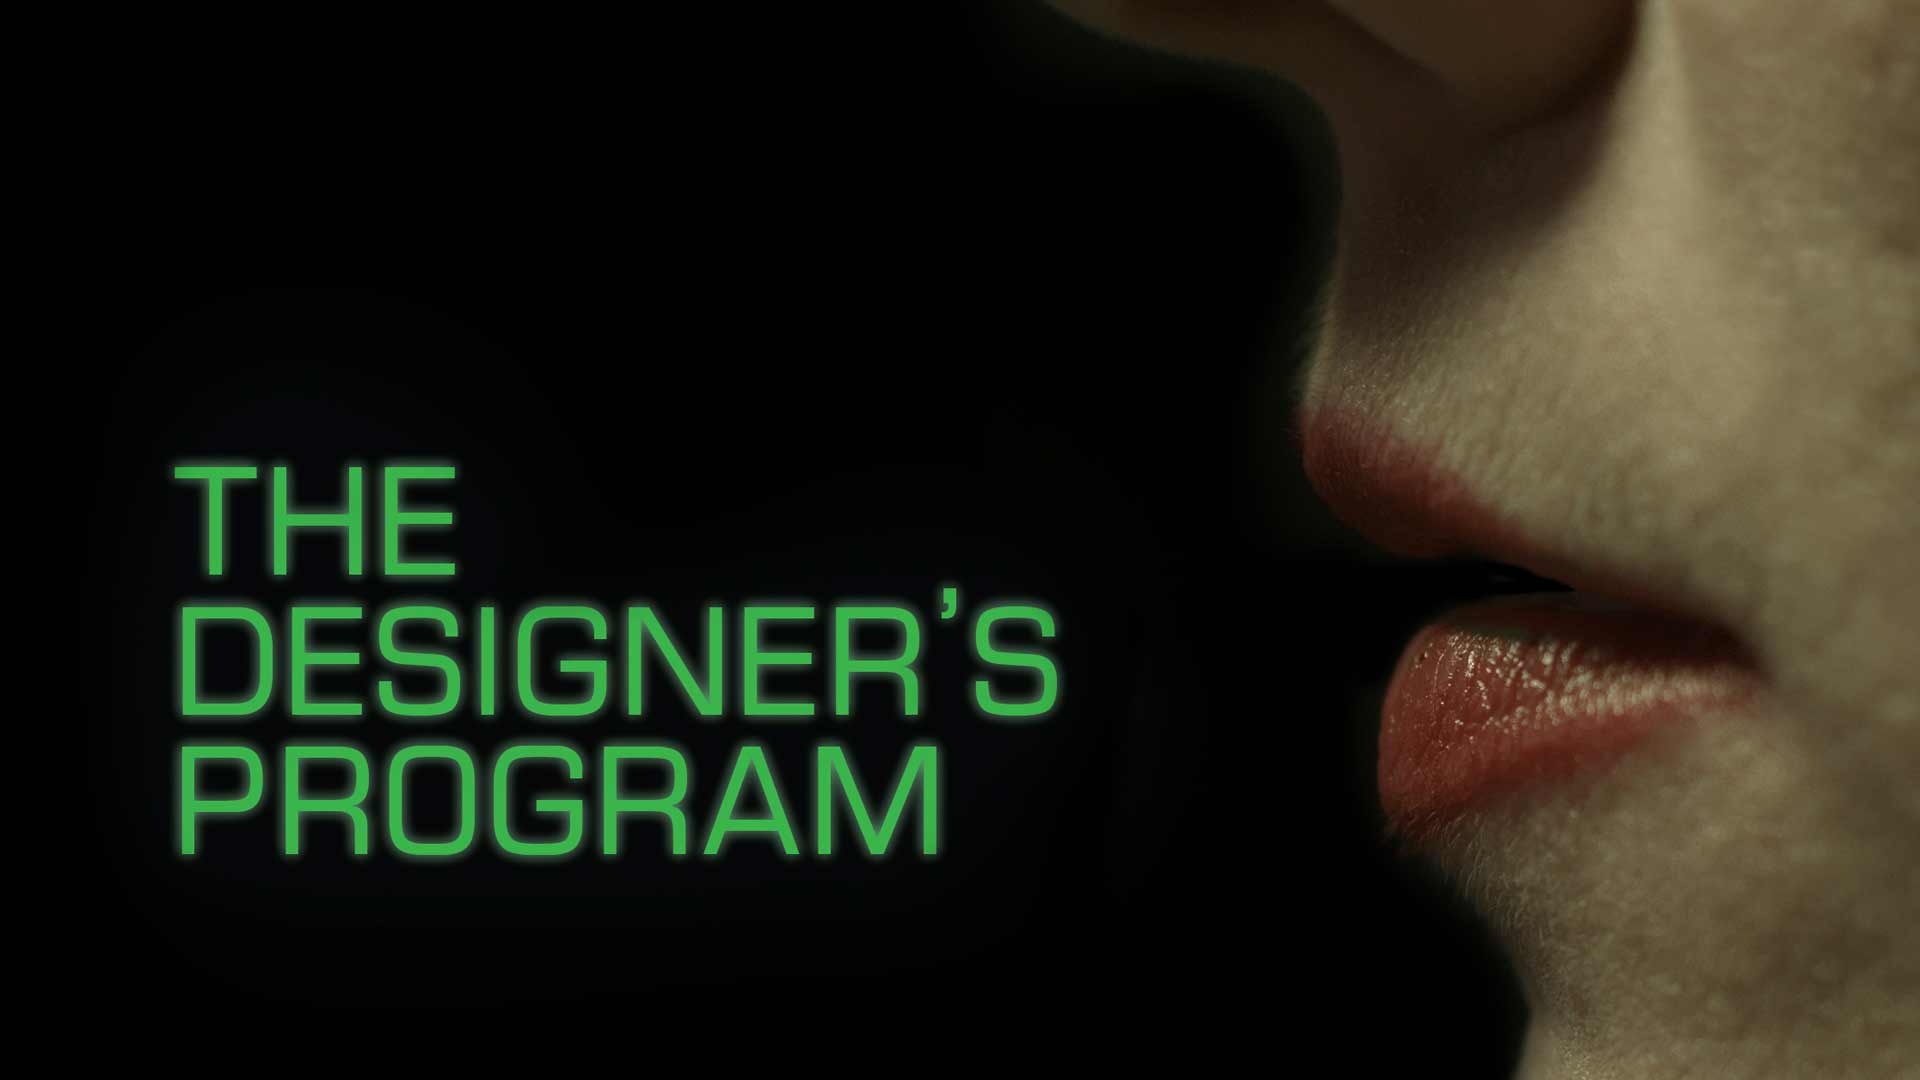 The Designer's Program